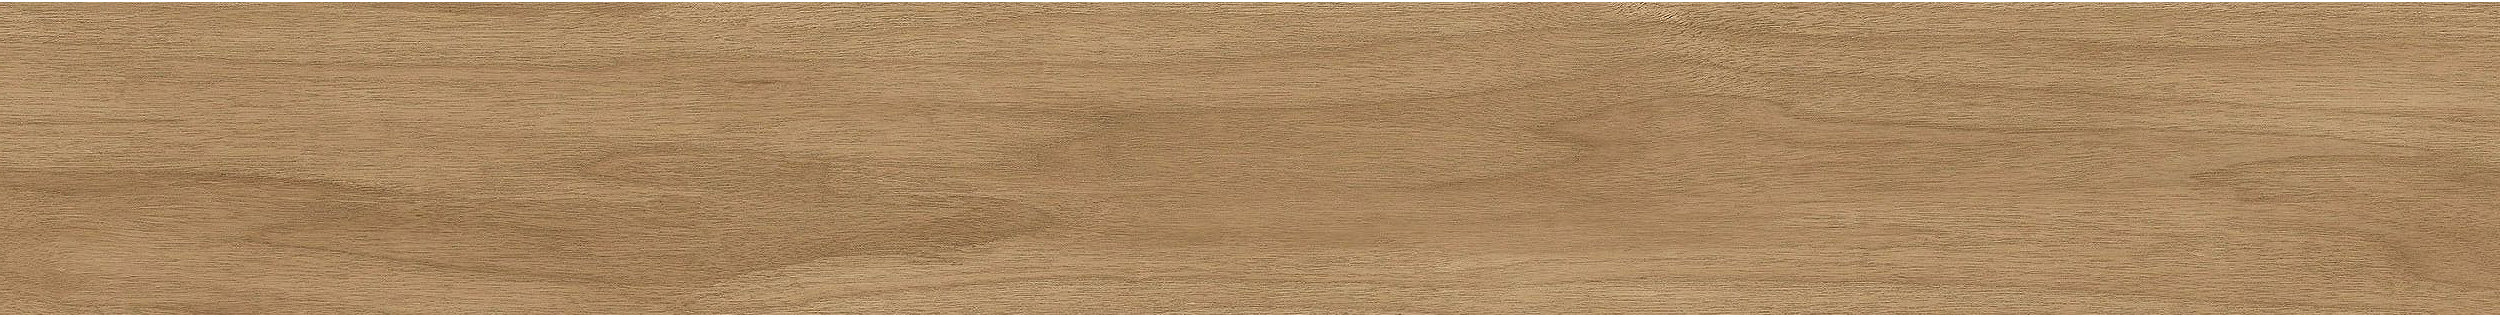 Criterion Classic Woodgrains LVT In Washed Maple Bildnummer 4